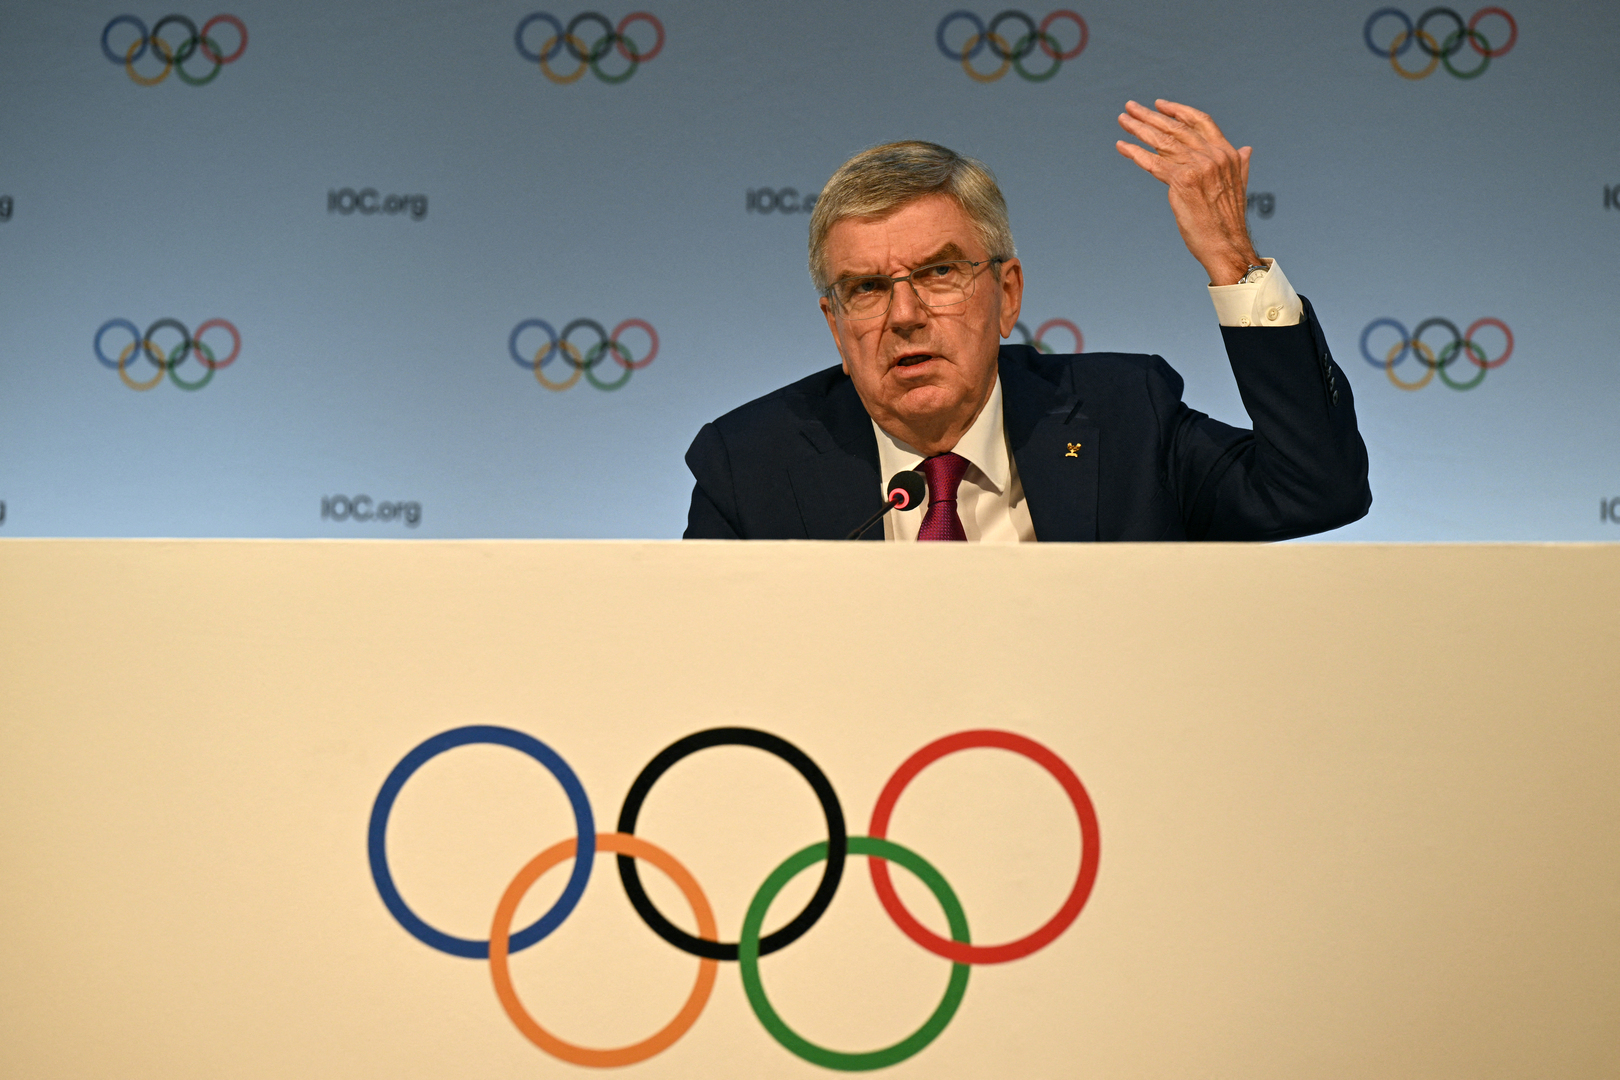 رئيس اللجنة الأولمبية الدولية يحسم جدل مقاطعة روسيا المحتملة لأولمبياد باريس 2024